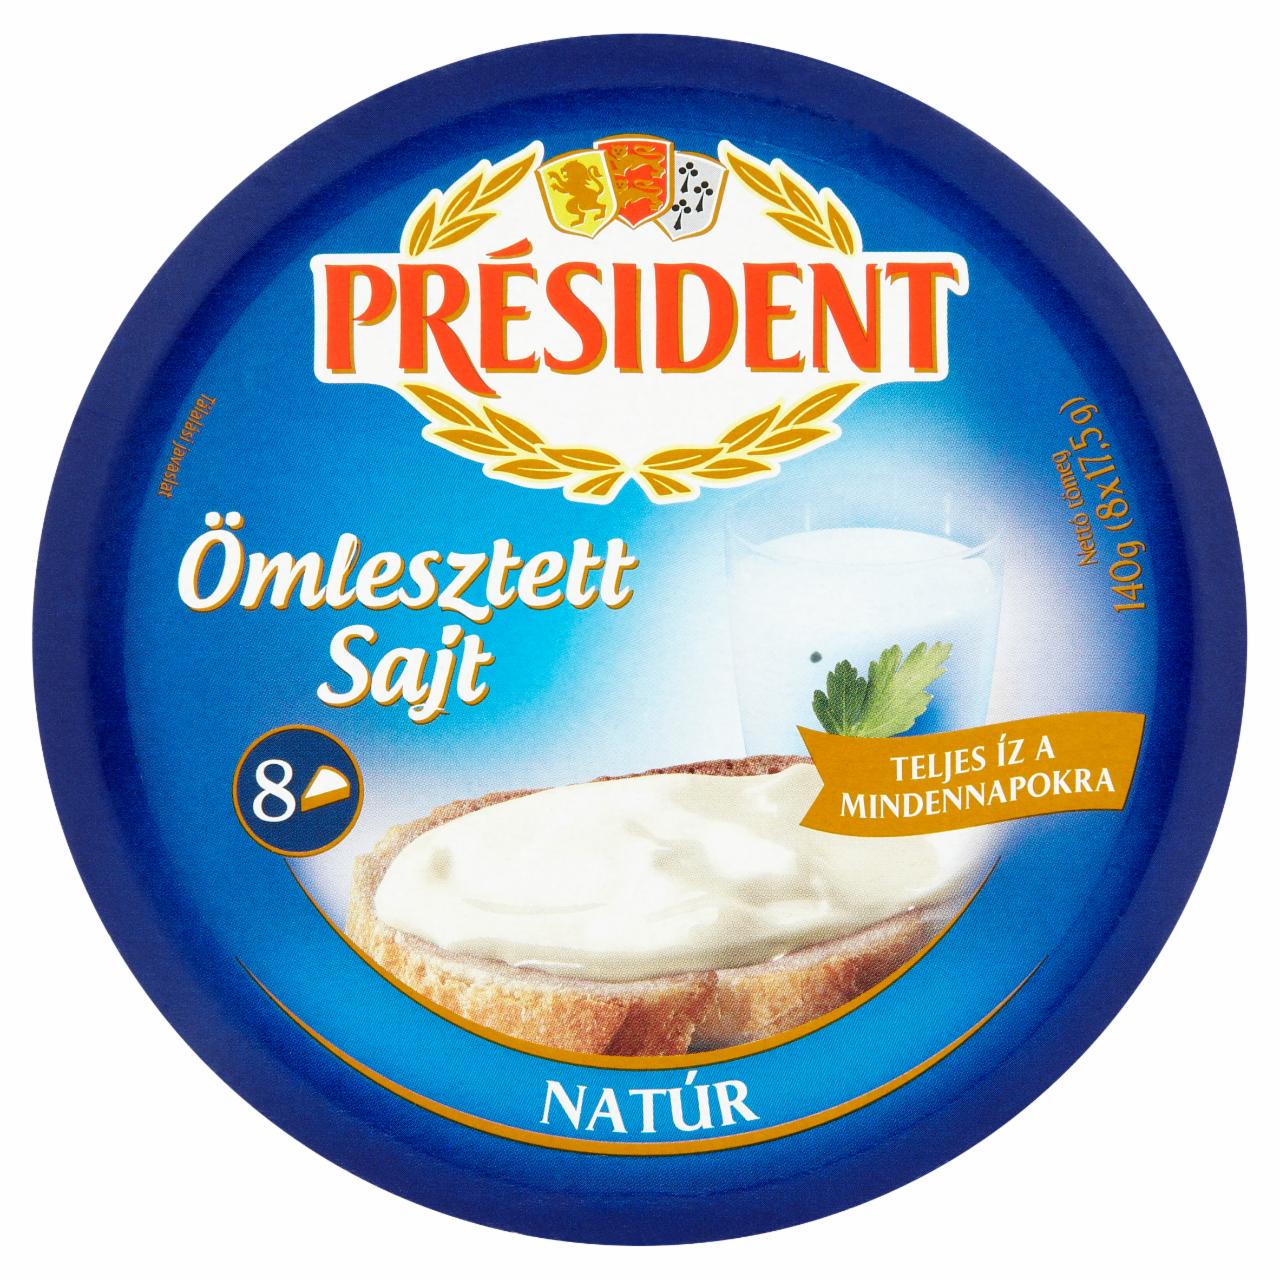 Képek - Président natúr ömlesztett sajt 8 x 17,5 g